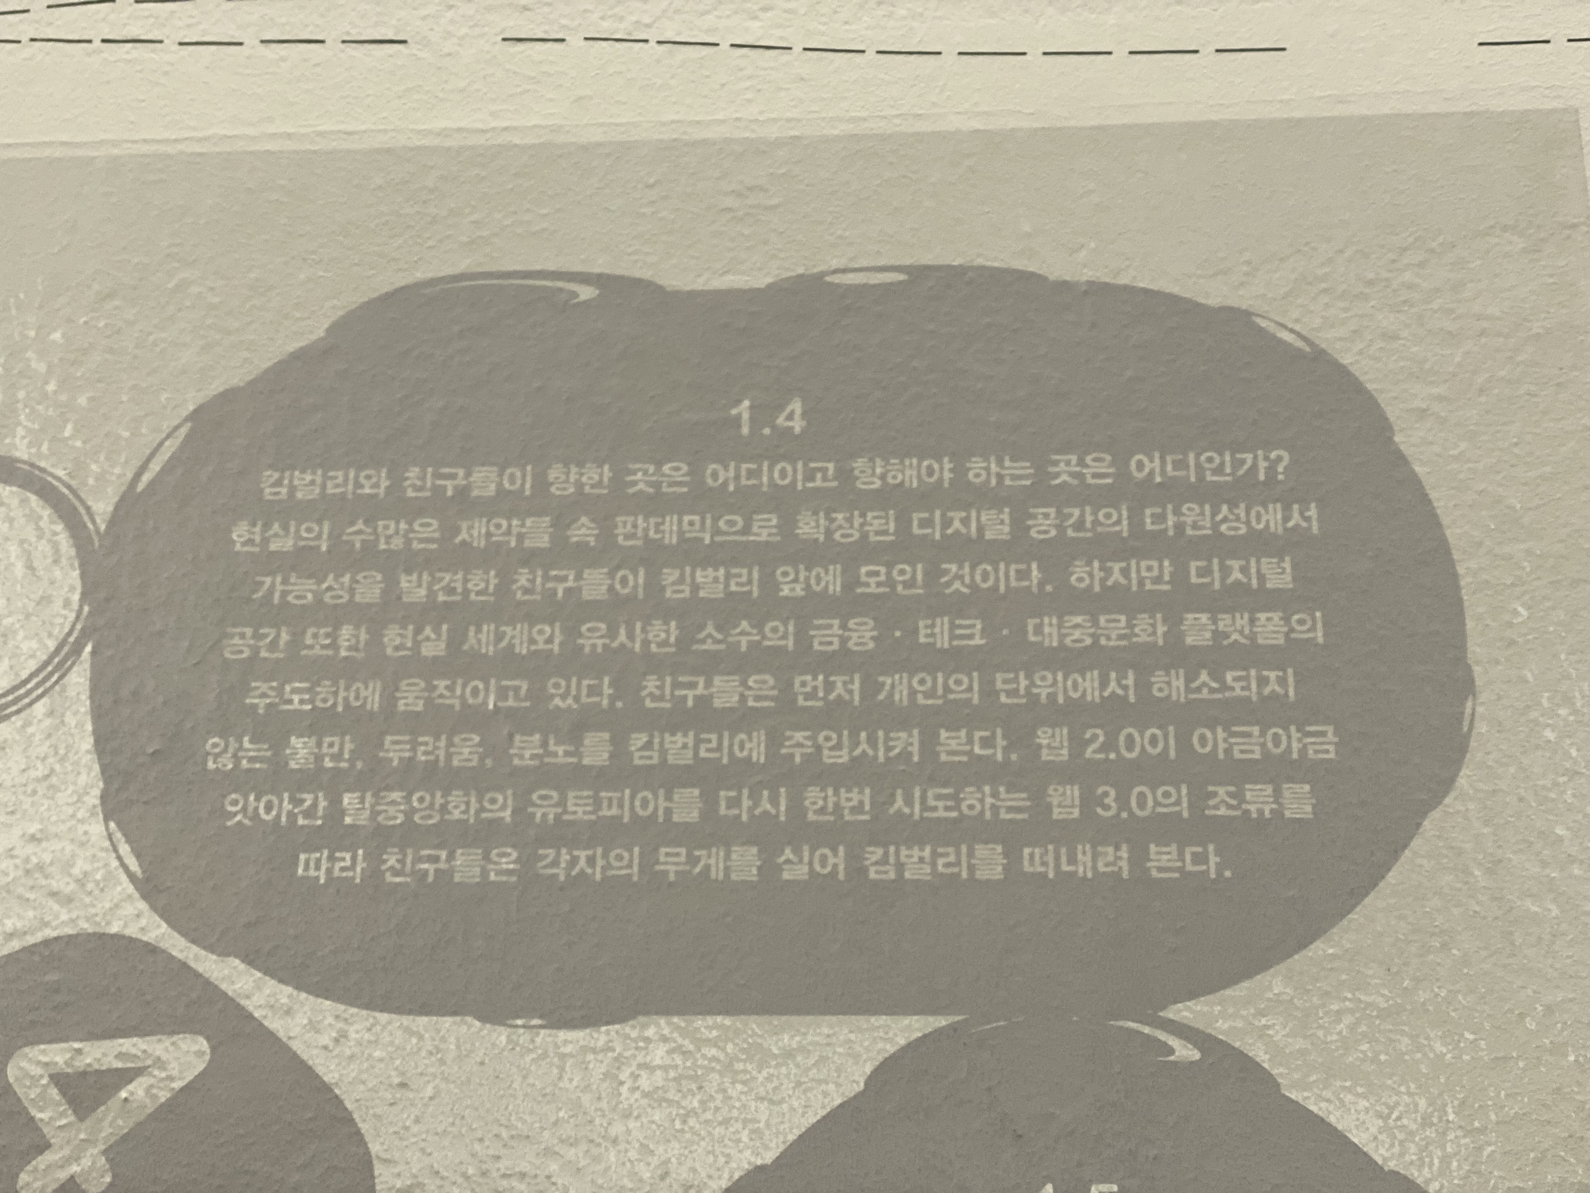 이은솔 <Kimberly & Friends>, 2022, 텍스트 설치, 싱글채널 비디오, 10분. 서울시립미술관 제작지원